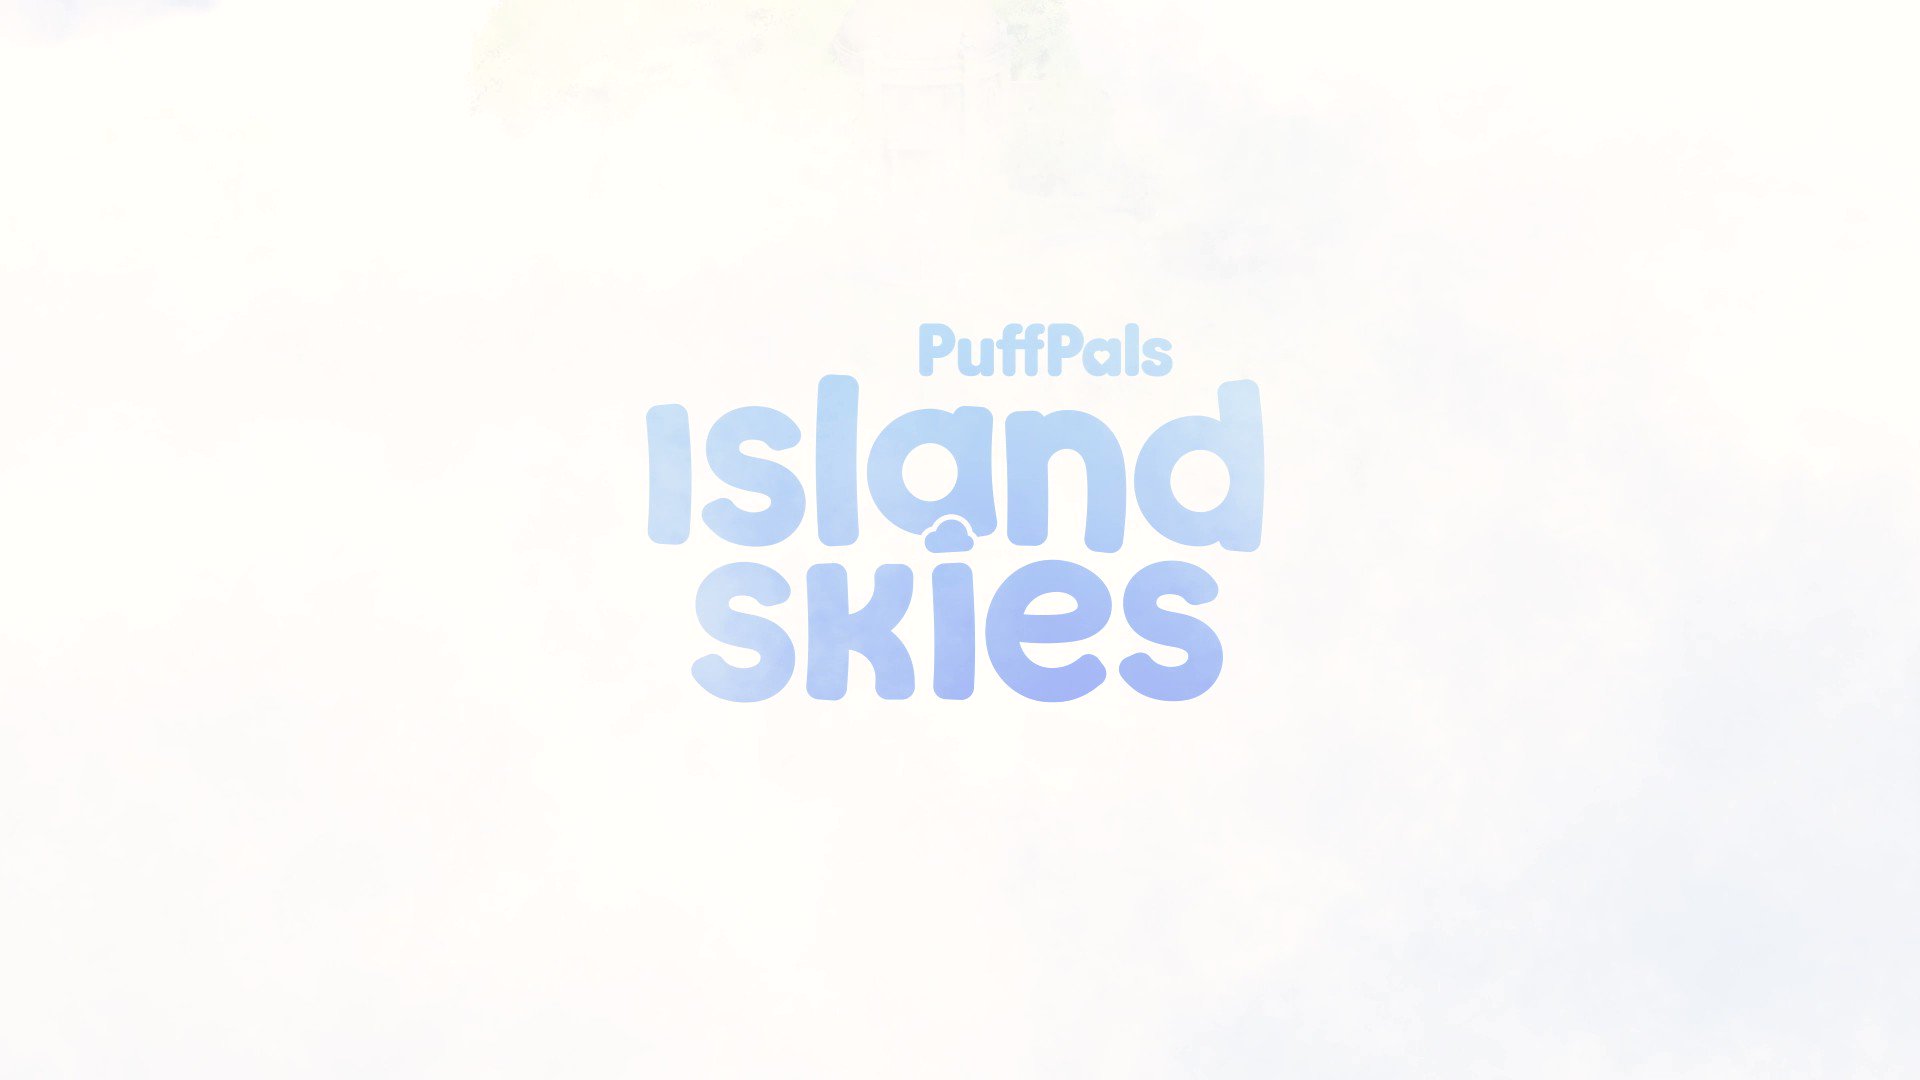 PuffPals: Island Skies by Fluffnest — Kickstarter